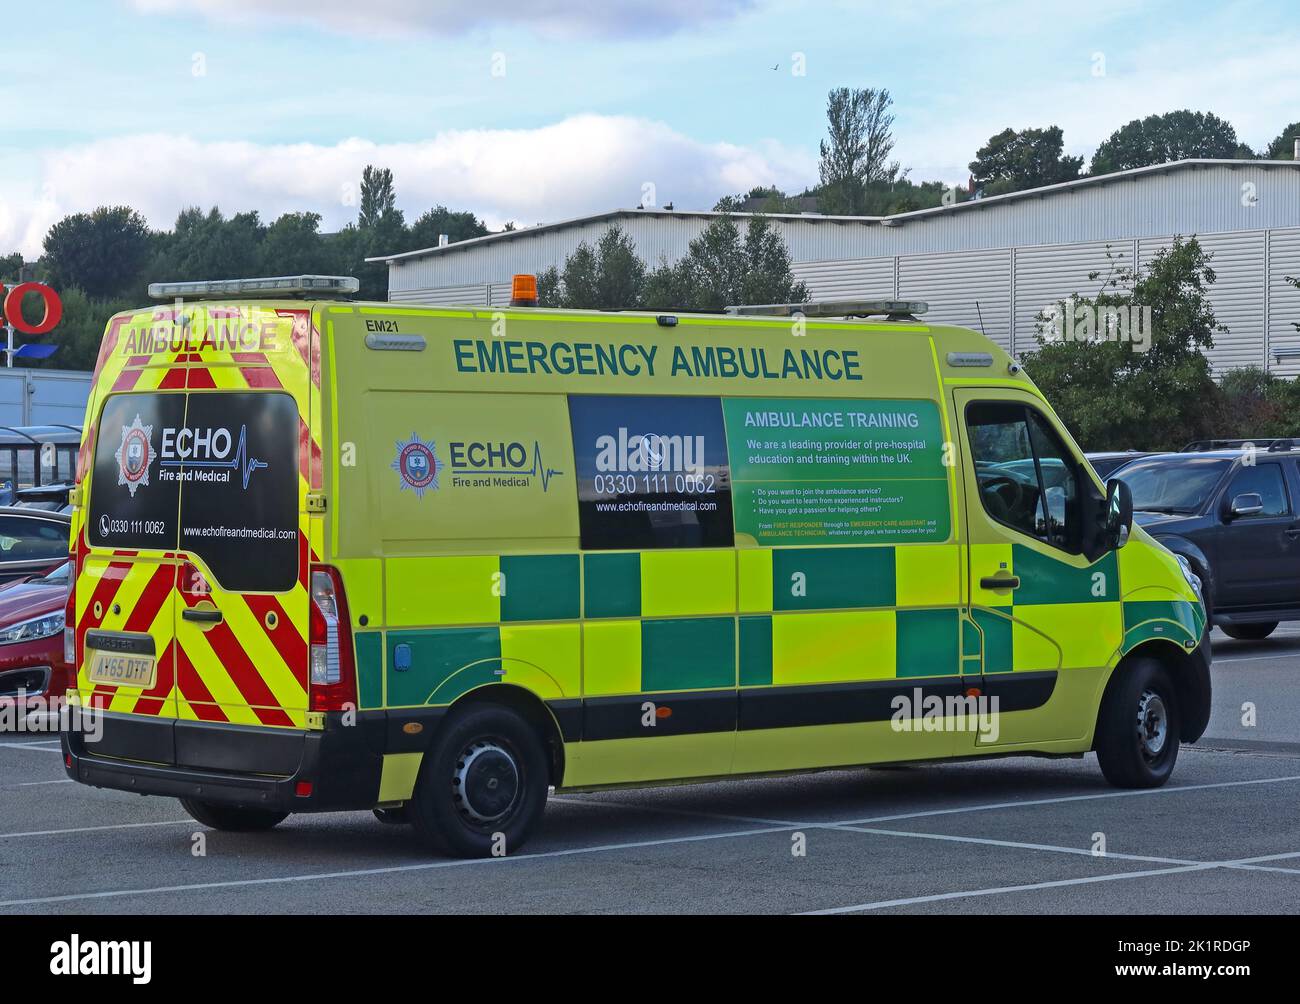 Echo, incendie et médical, ambulance d'urgence, garée à Glossop, High Peak, Derbyshire, Angleterre, Royaume-Uni, SK13 Banque D'Images